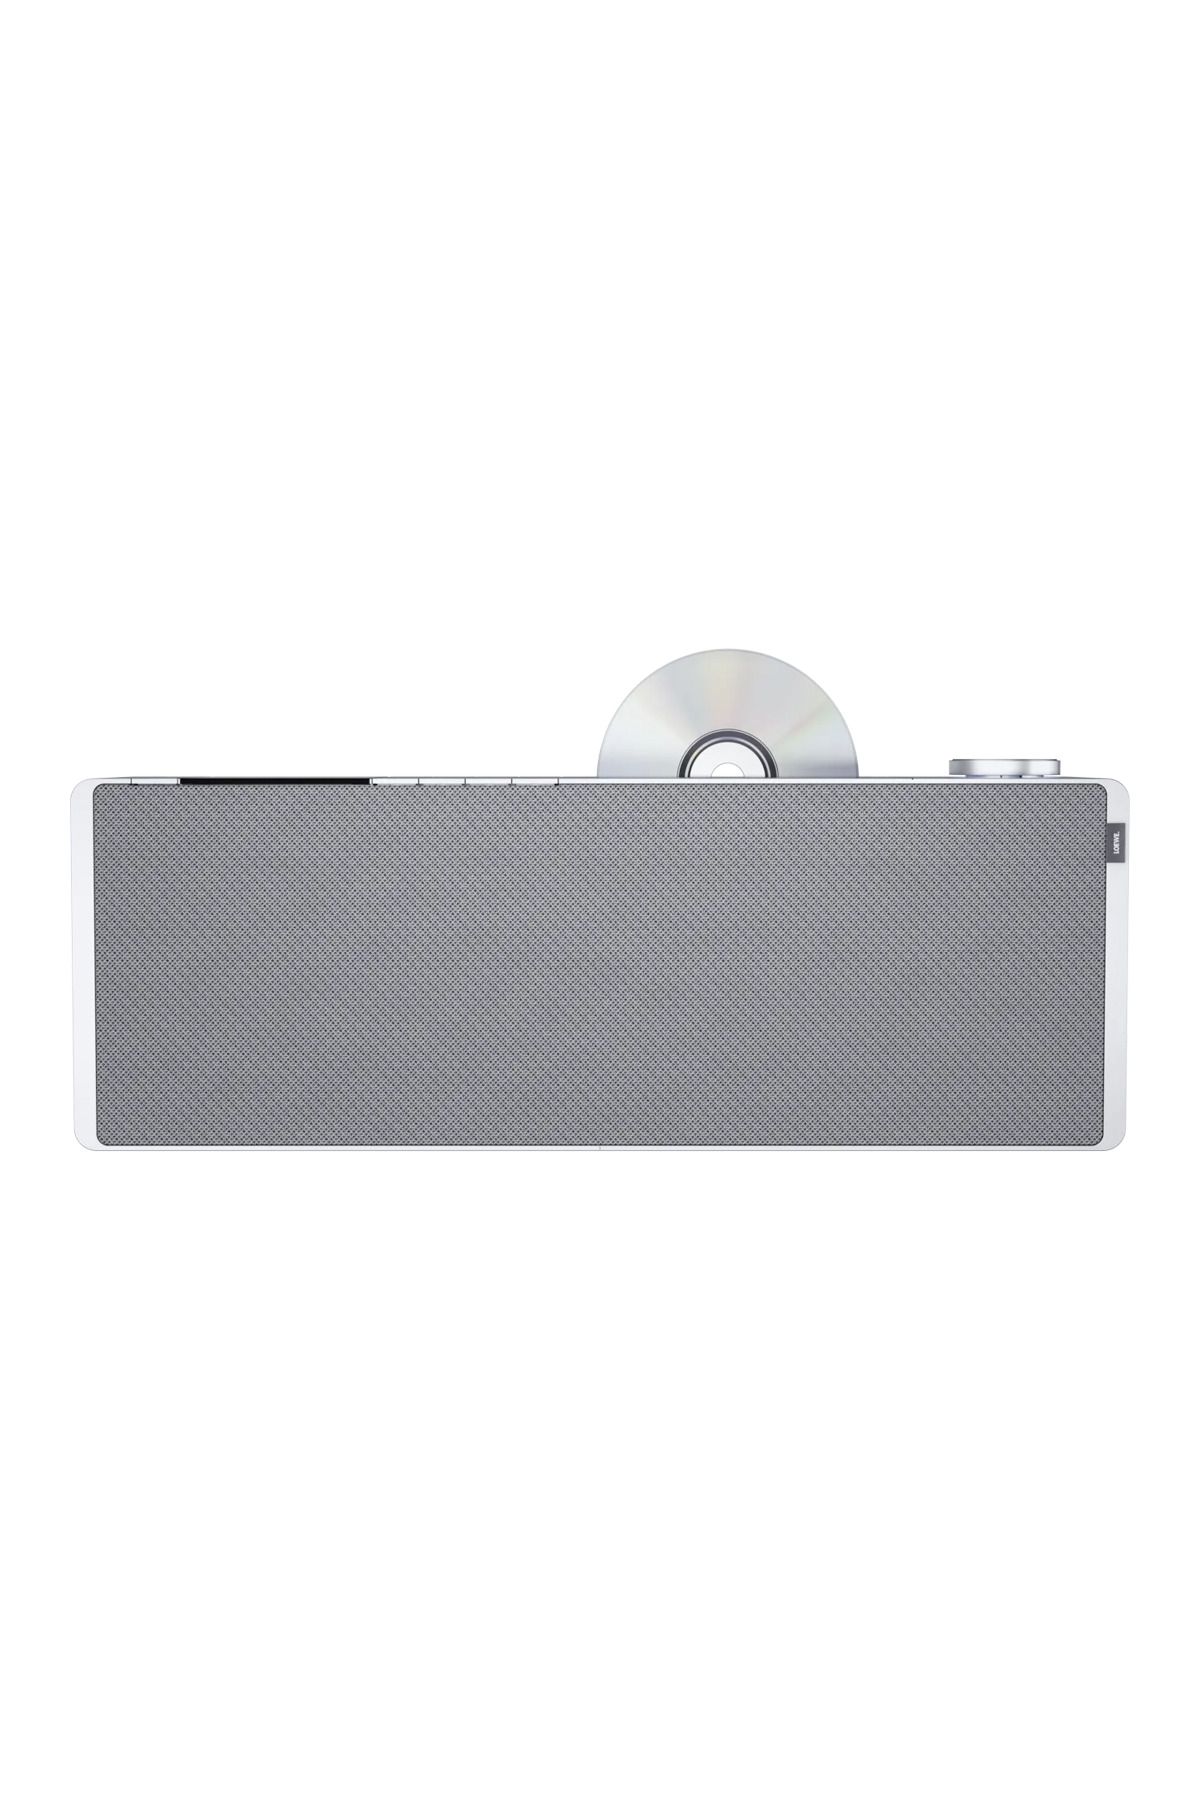 Loewe Klang S3 Light Grey 46,0cmx16cmx9cm Taşınabilir Bluetooth Hoparlör İnternet Radyosu CD Çalar